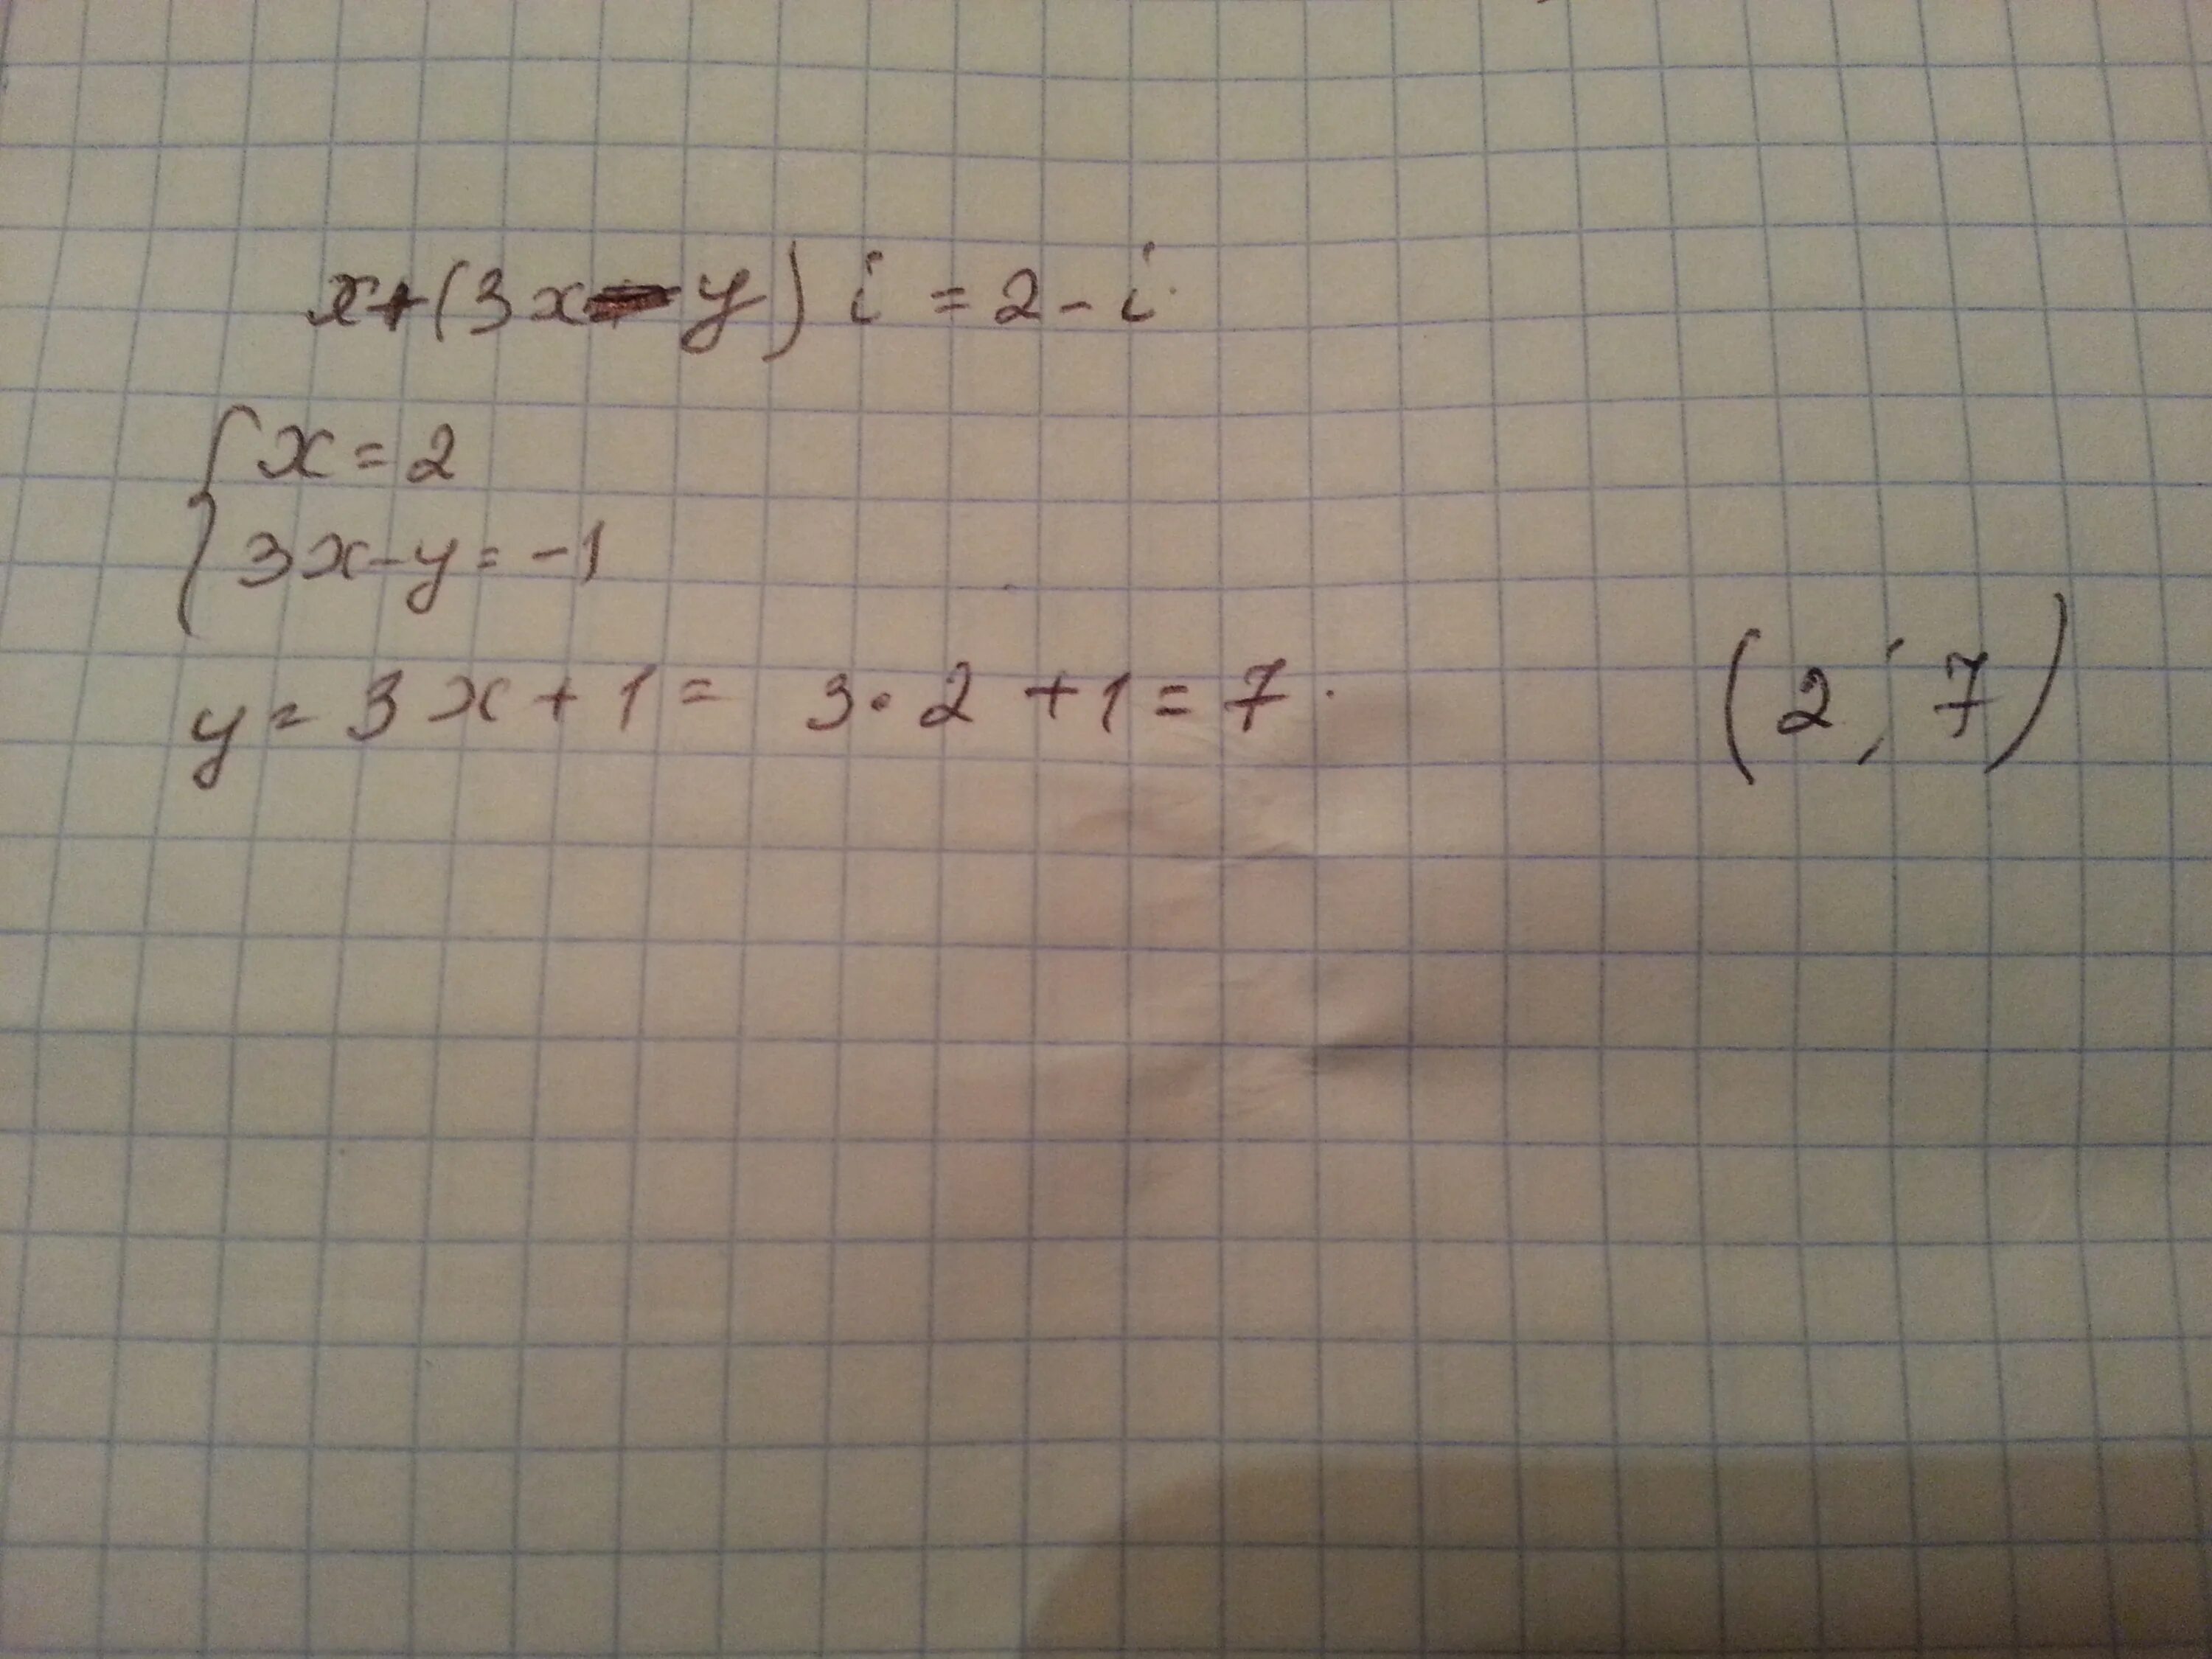 4x 3 64. (6+2i)x(3-4i). 2x+1x+. X^2=I. X+((X^5)/5) y0=1.